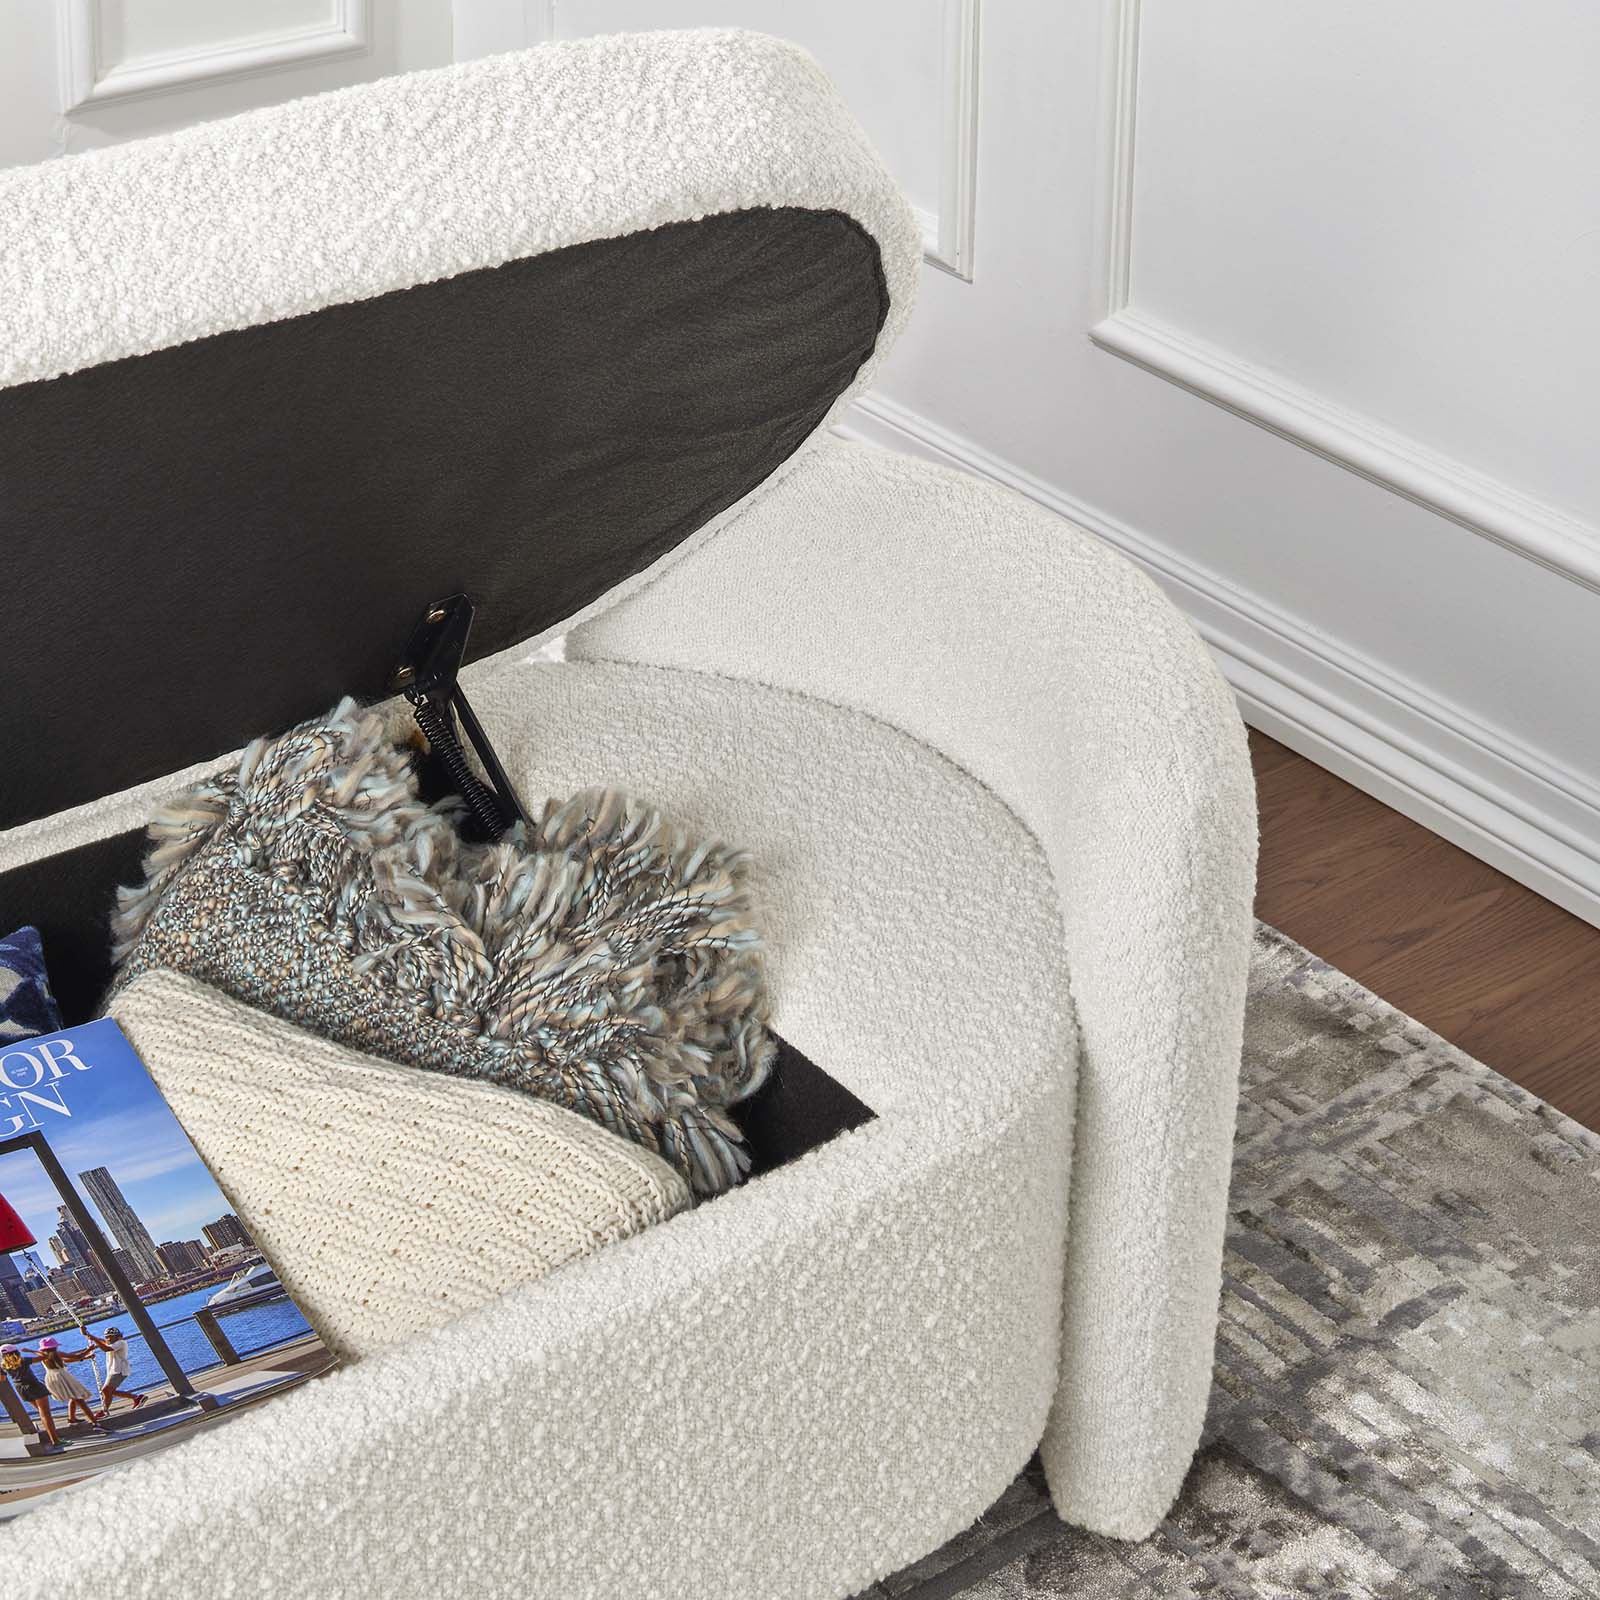 Nebula Boucle Upholstered Bench-Bench-Modway-Wall2Wall Furnishings